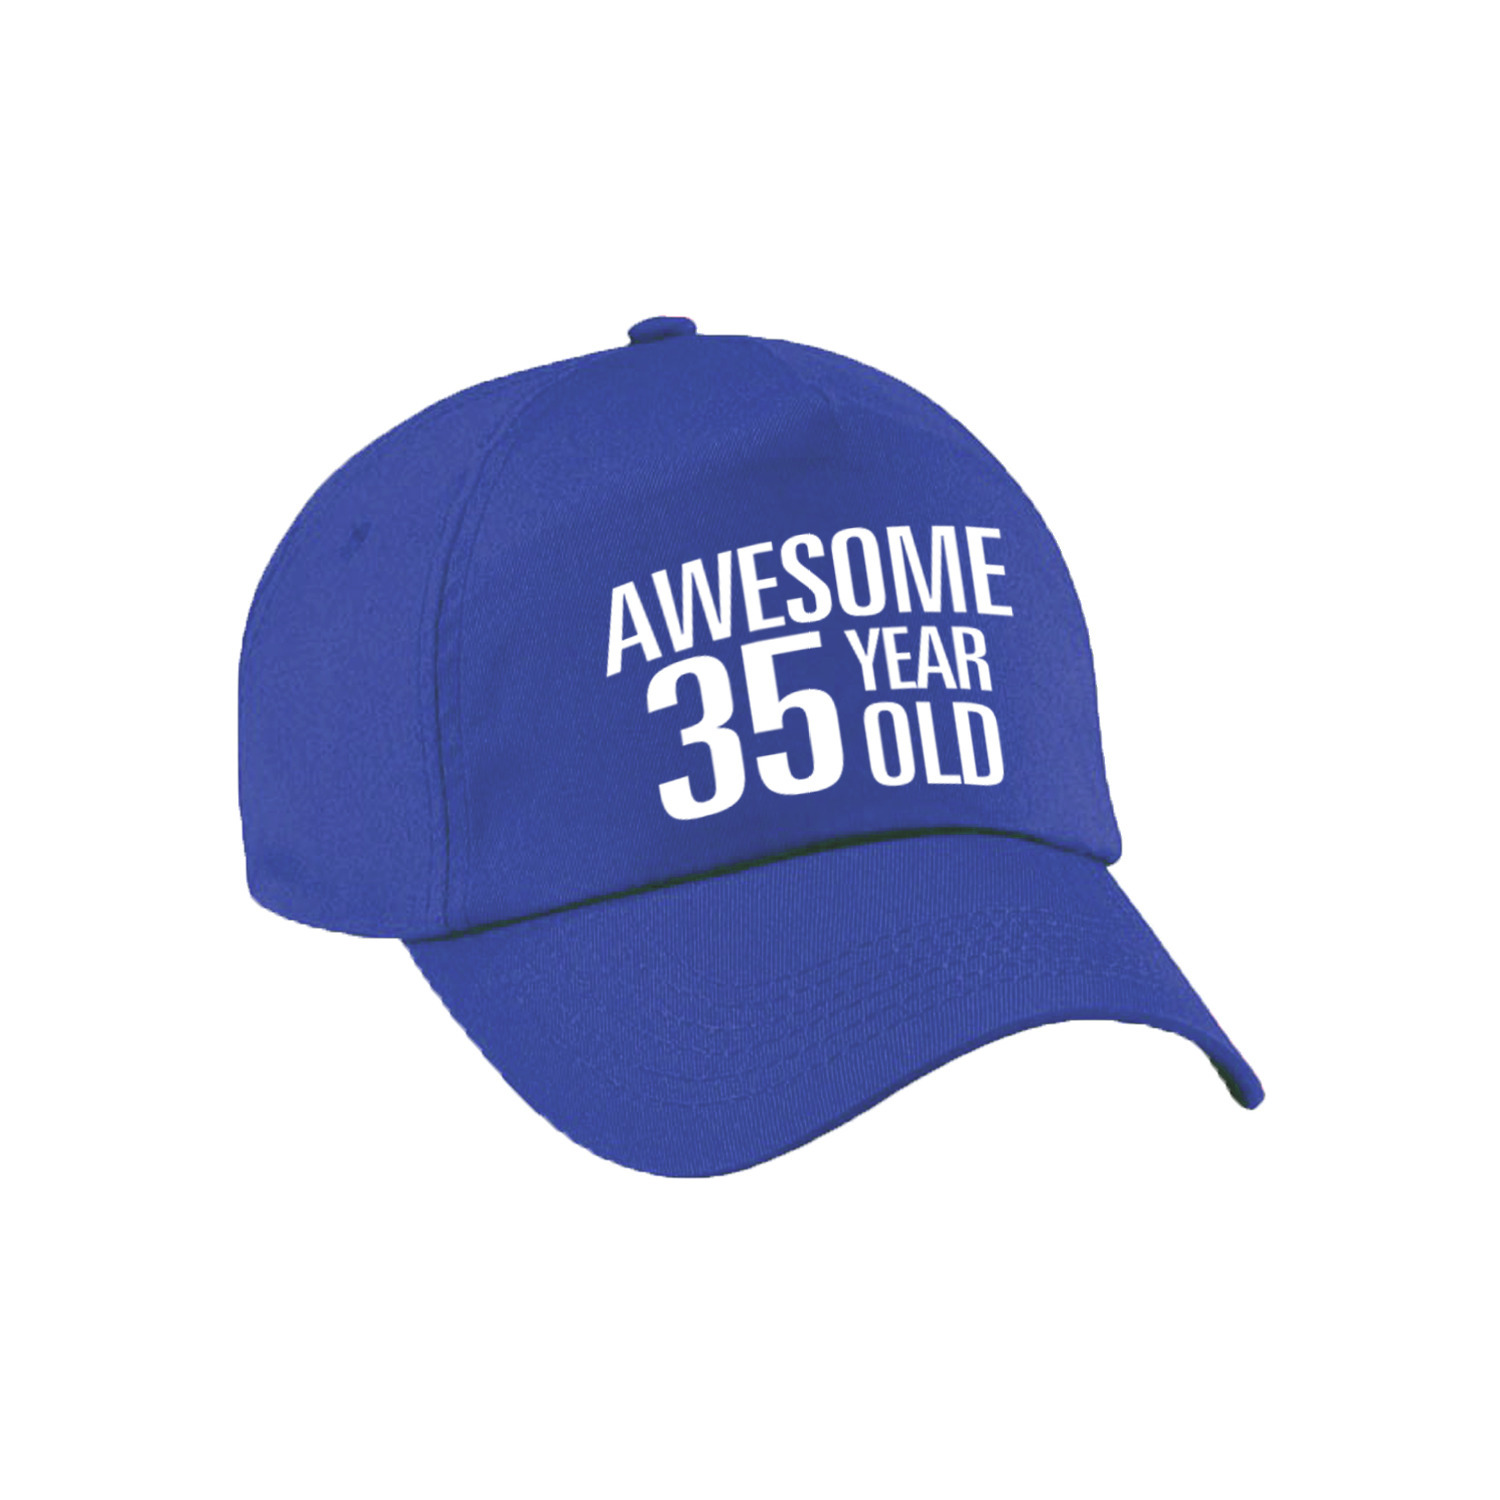 Awesome 35 year old verjaardag pet - cap blauw voor dames en heren